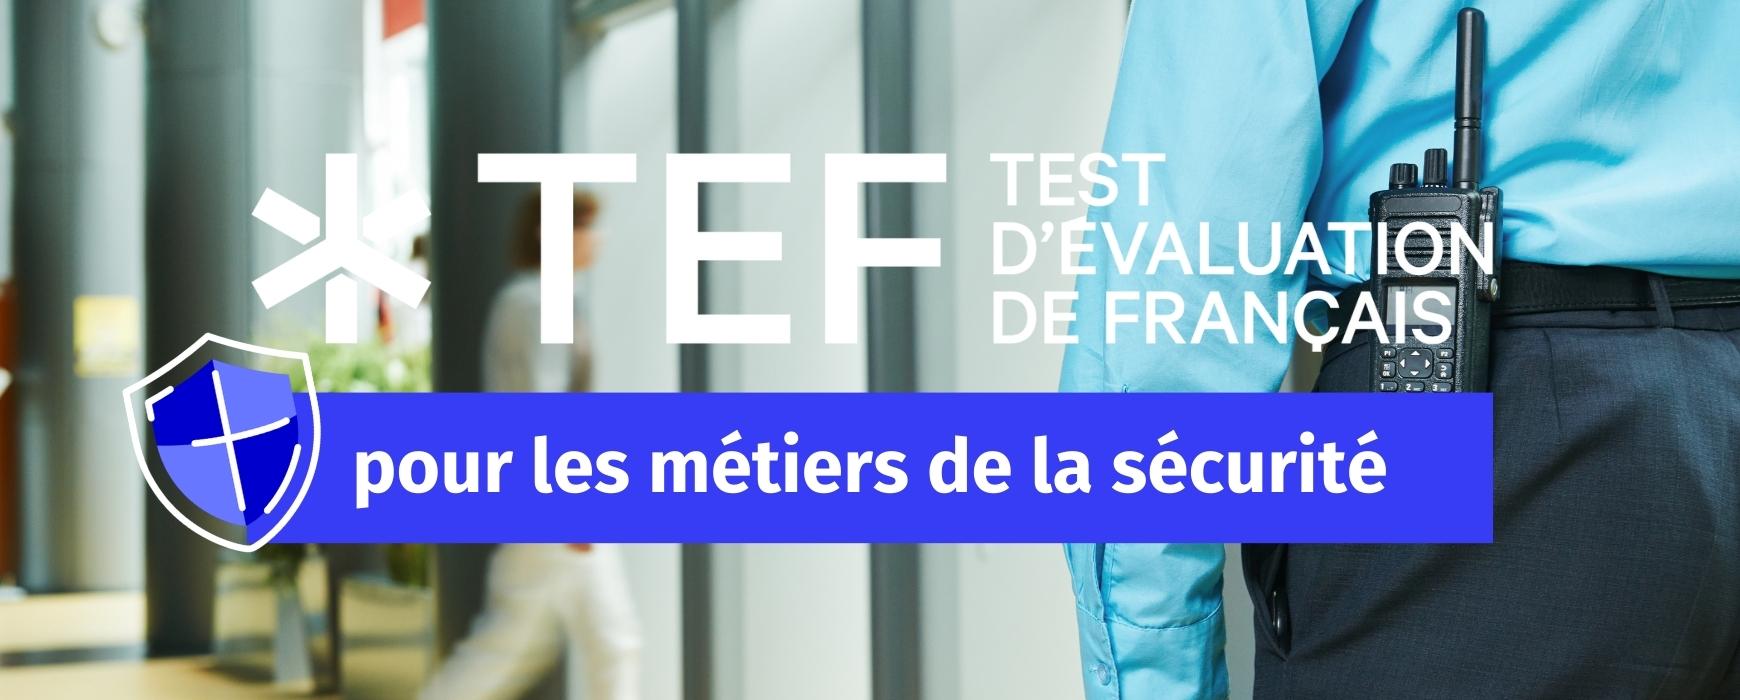 Travaillez dans la sécurité privée avec le Test d'évaluation de français  (TEF) - Le français des affaires